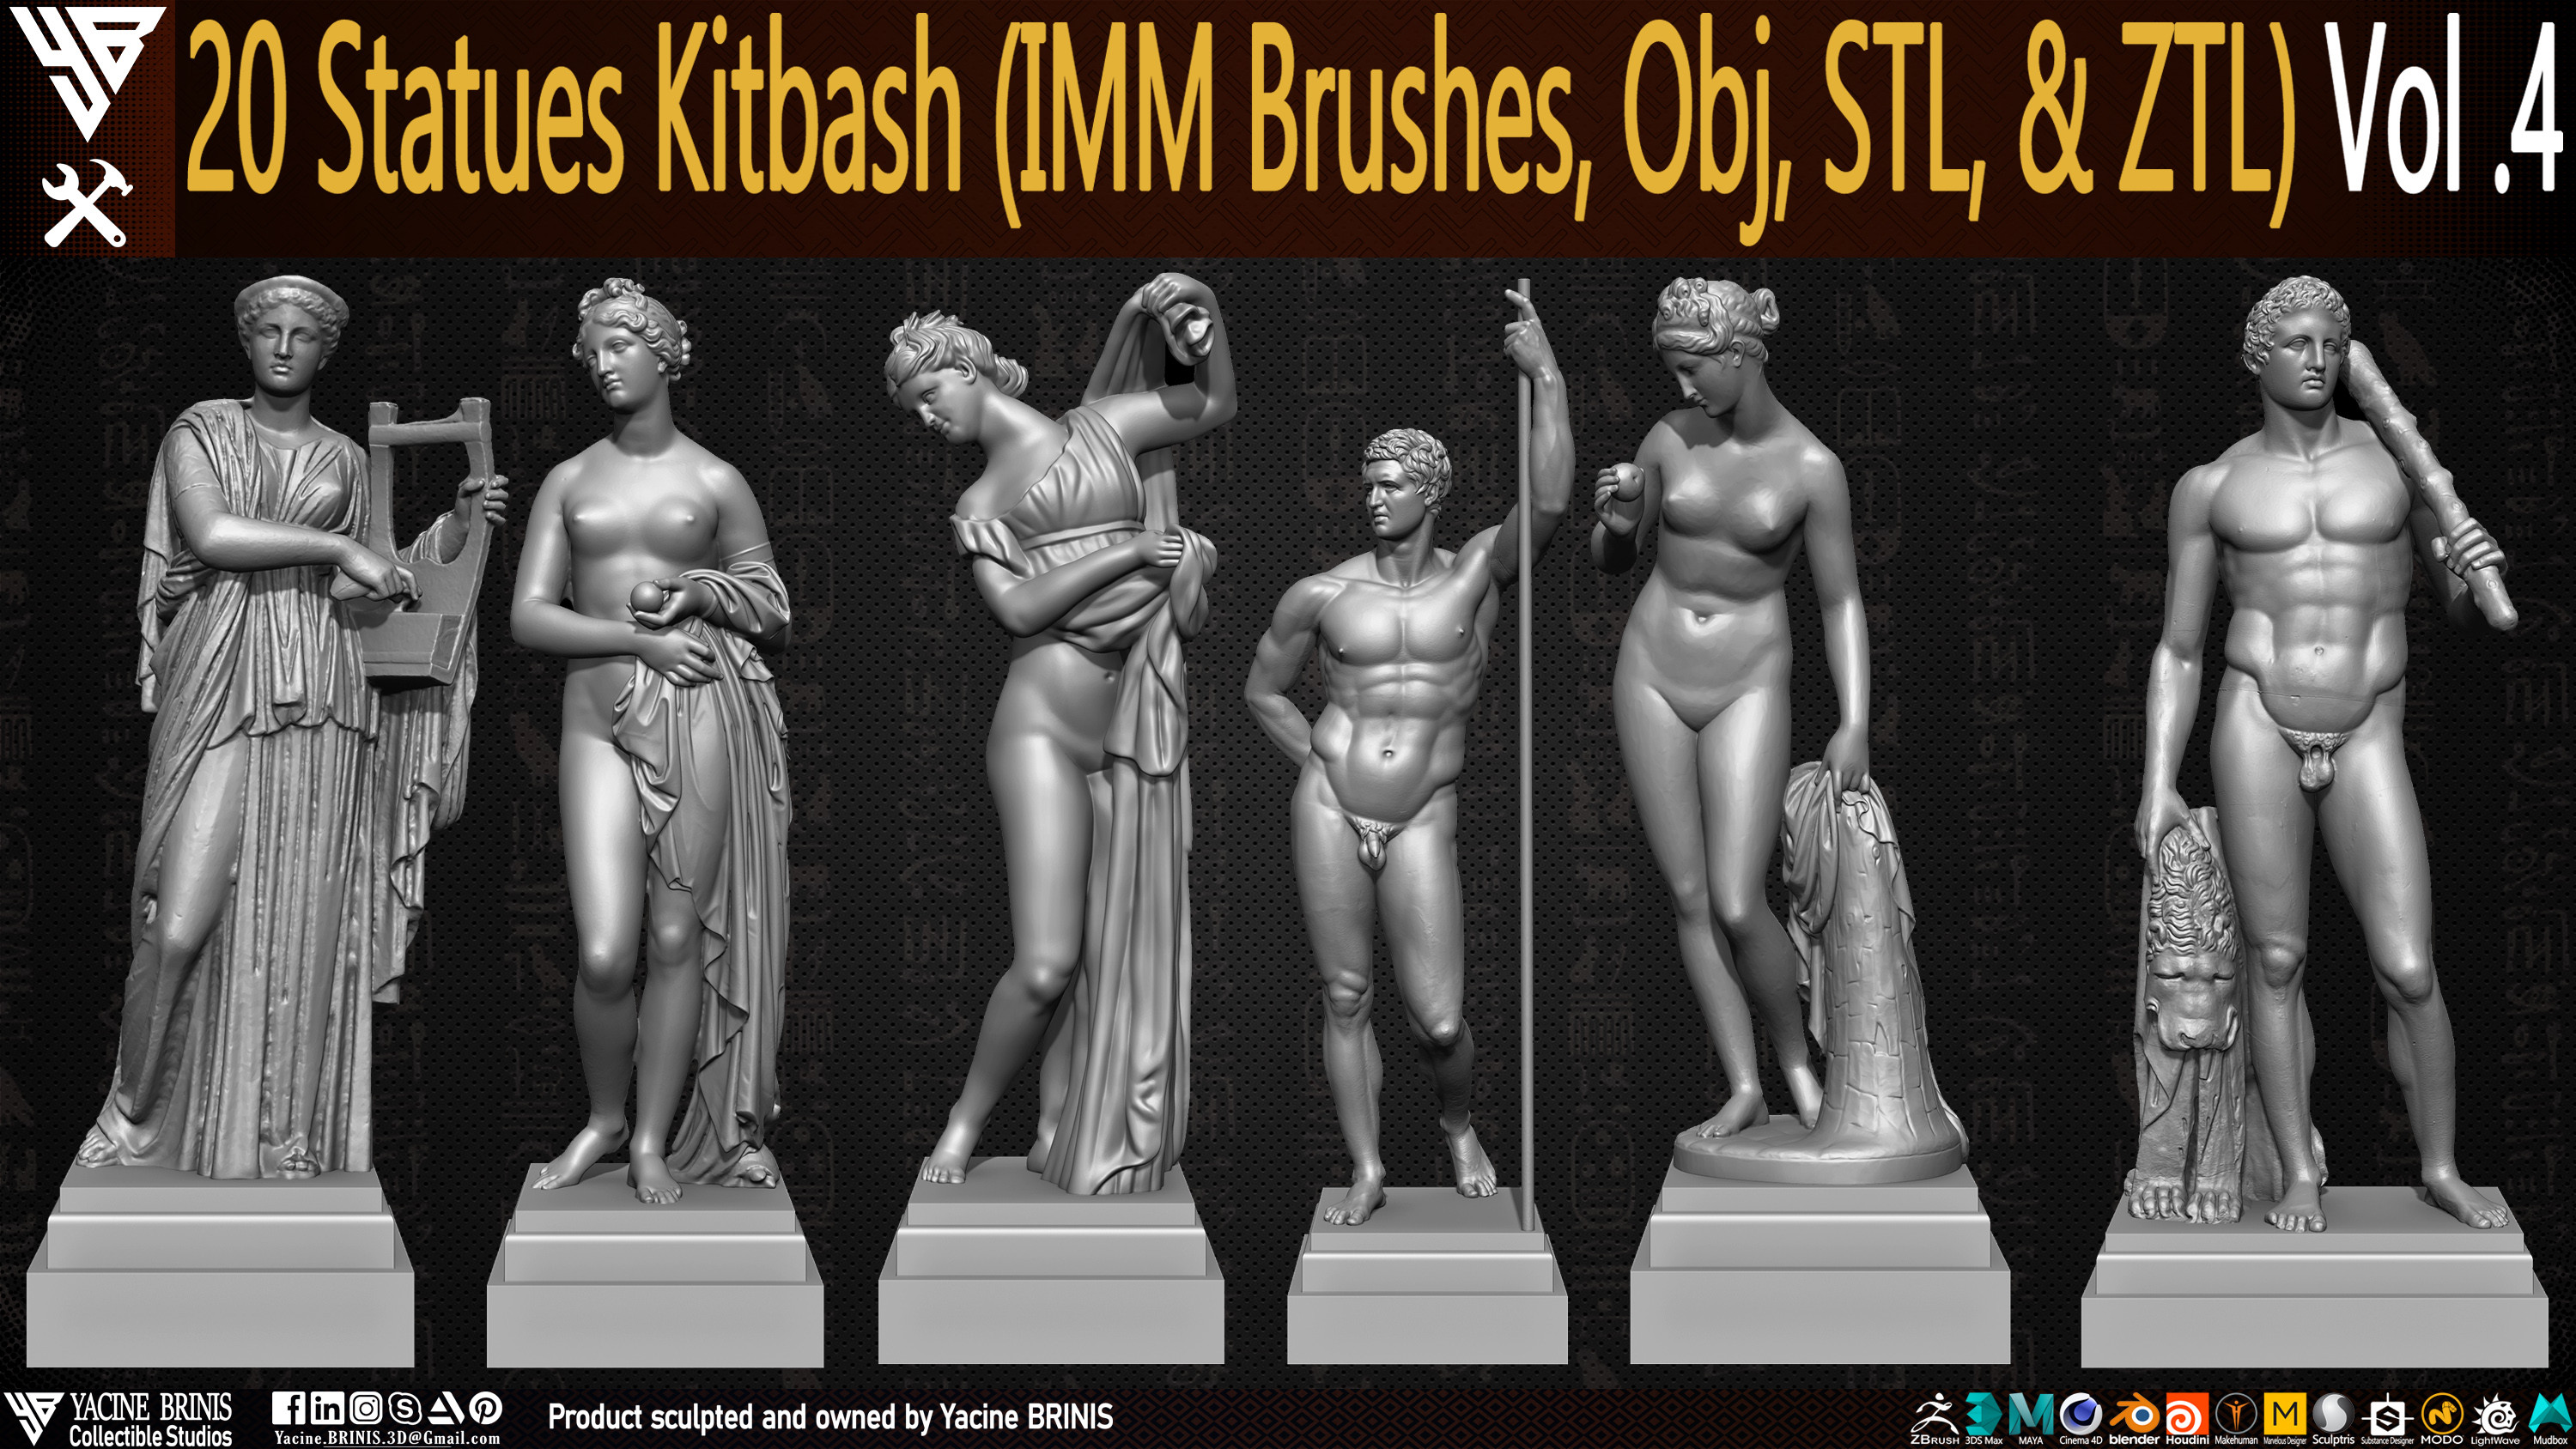 Statues Kitbash by yacine brinis Set 17